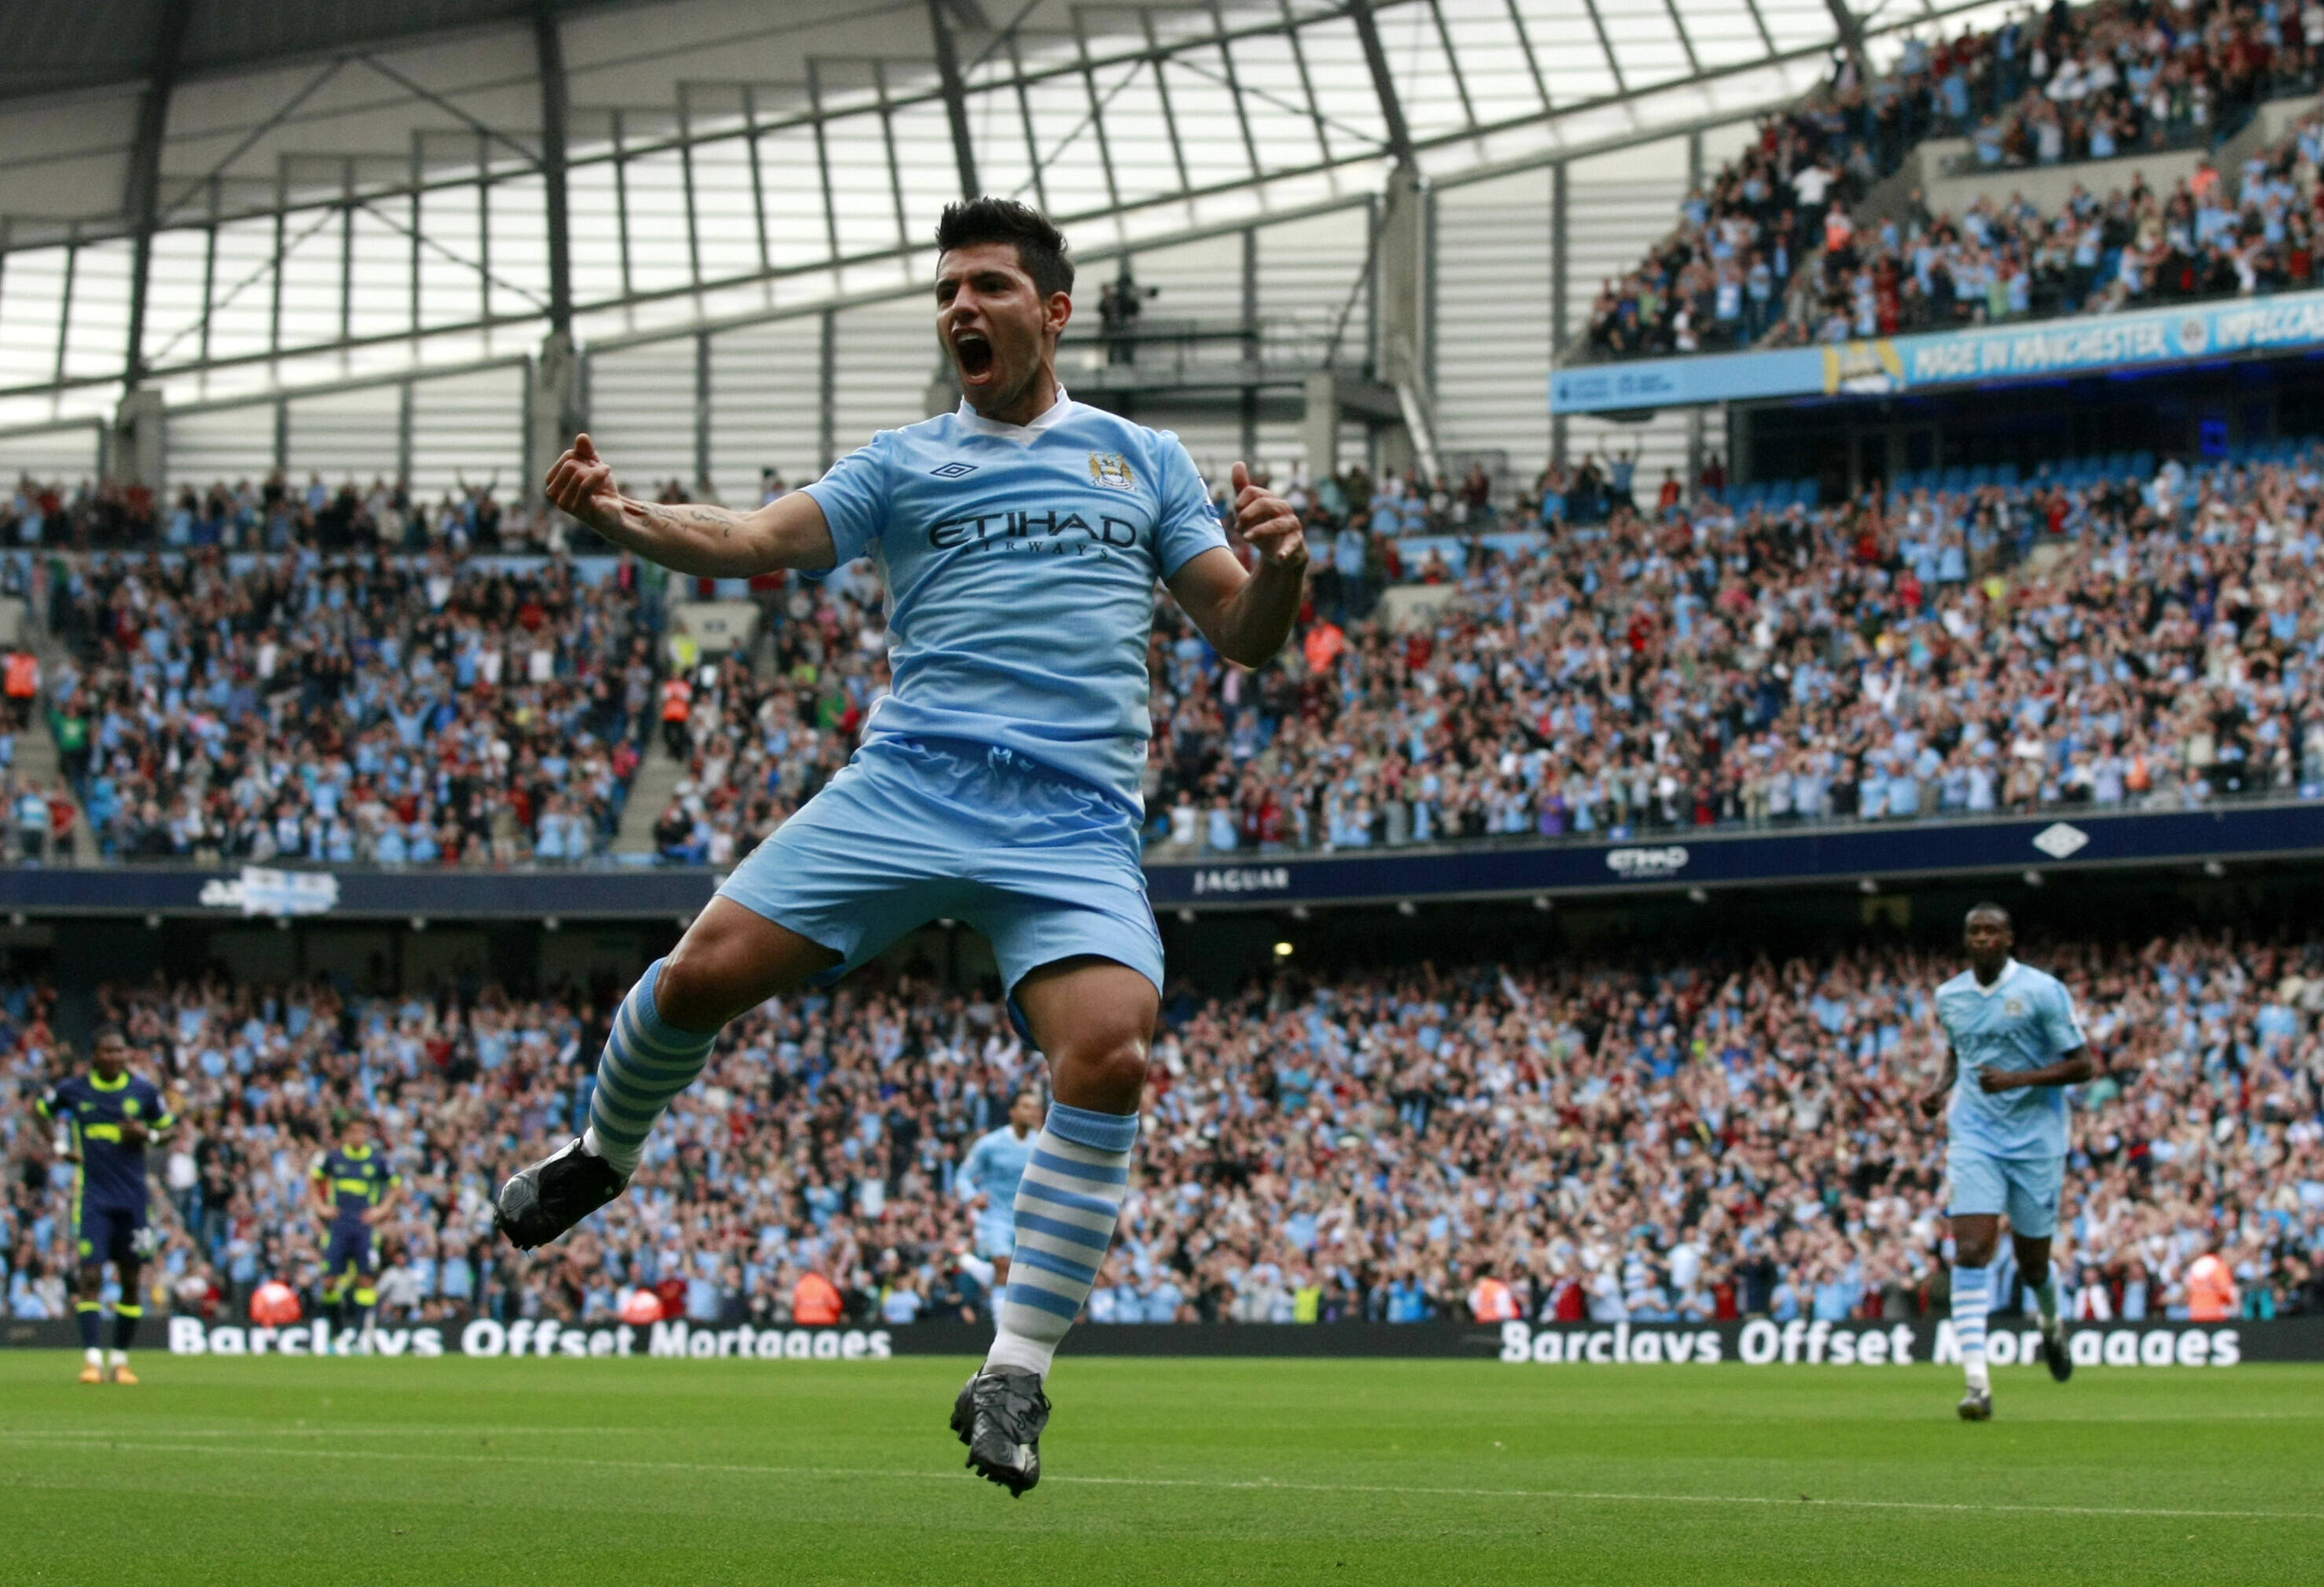 Destaque do jogo foi o argentino Aguero, que marcou todos os gols da partida na vitória de 3 a 0, em Manchester. Foto: AP